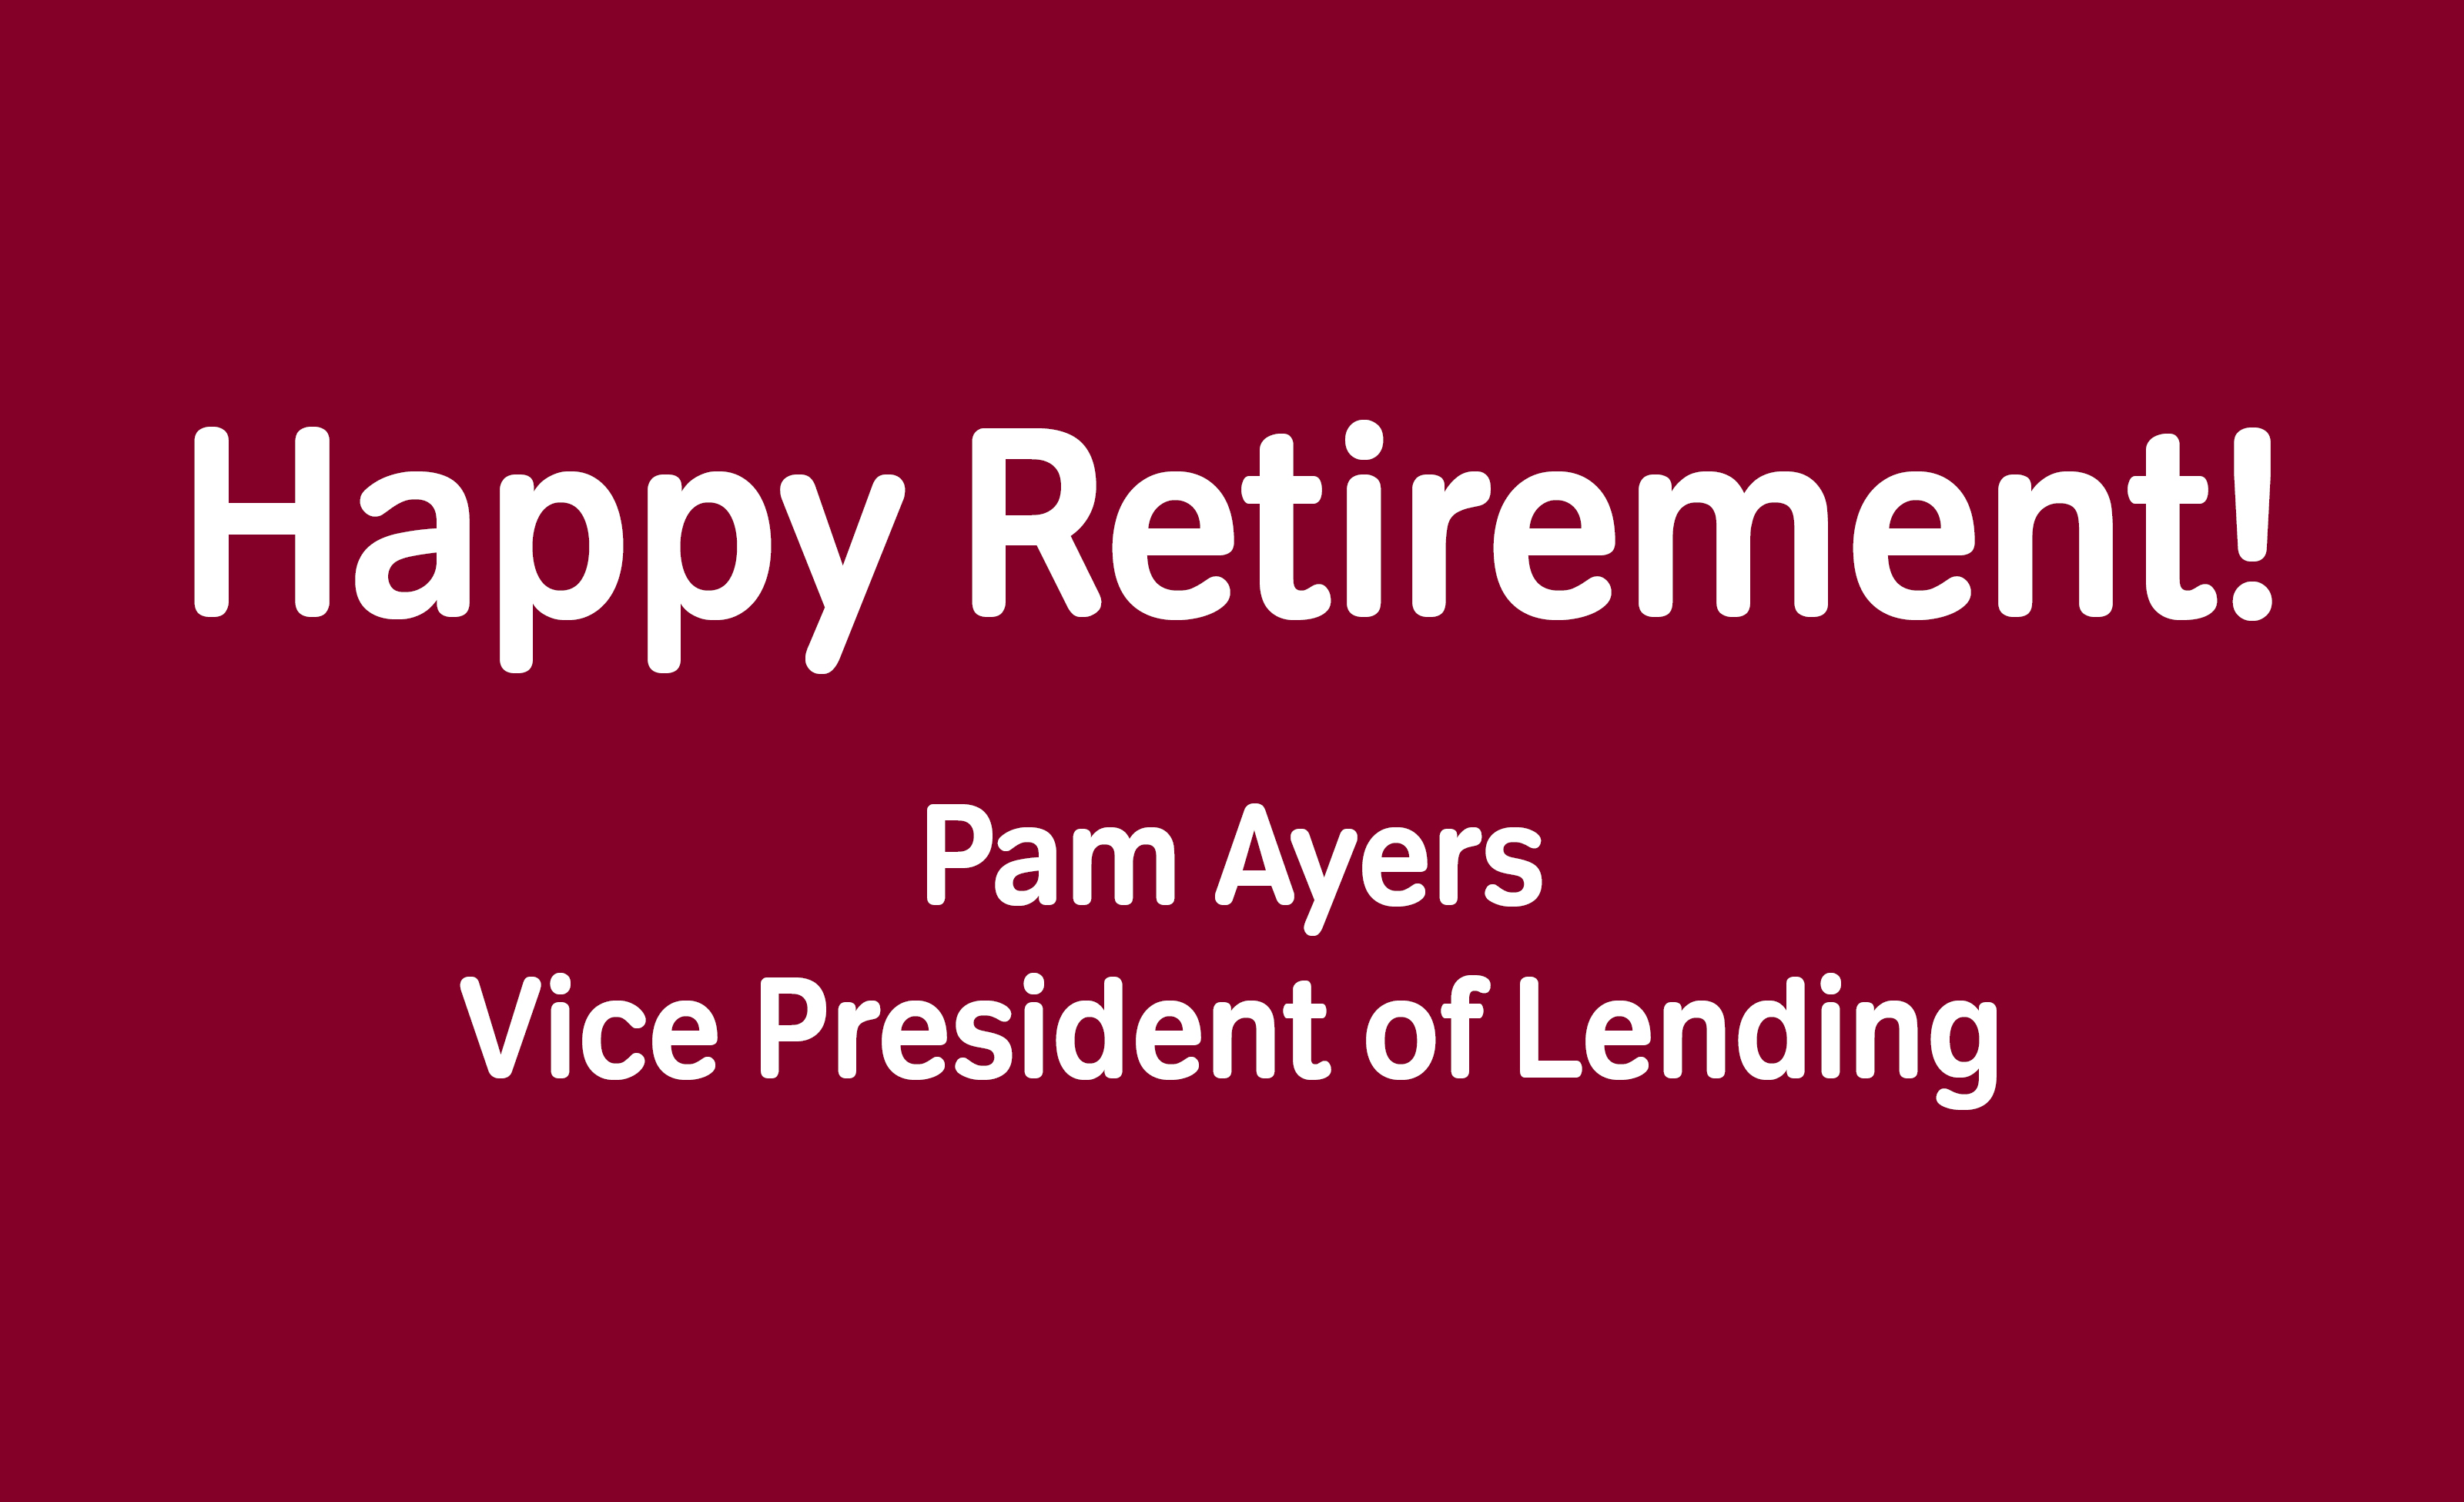 Happy Retirement Pam Ayers!